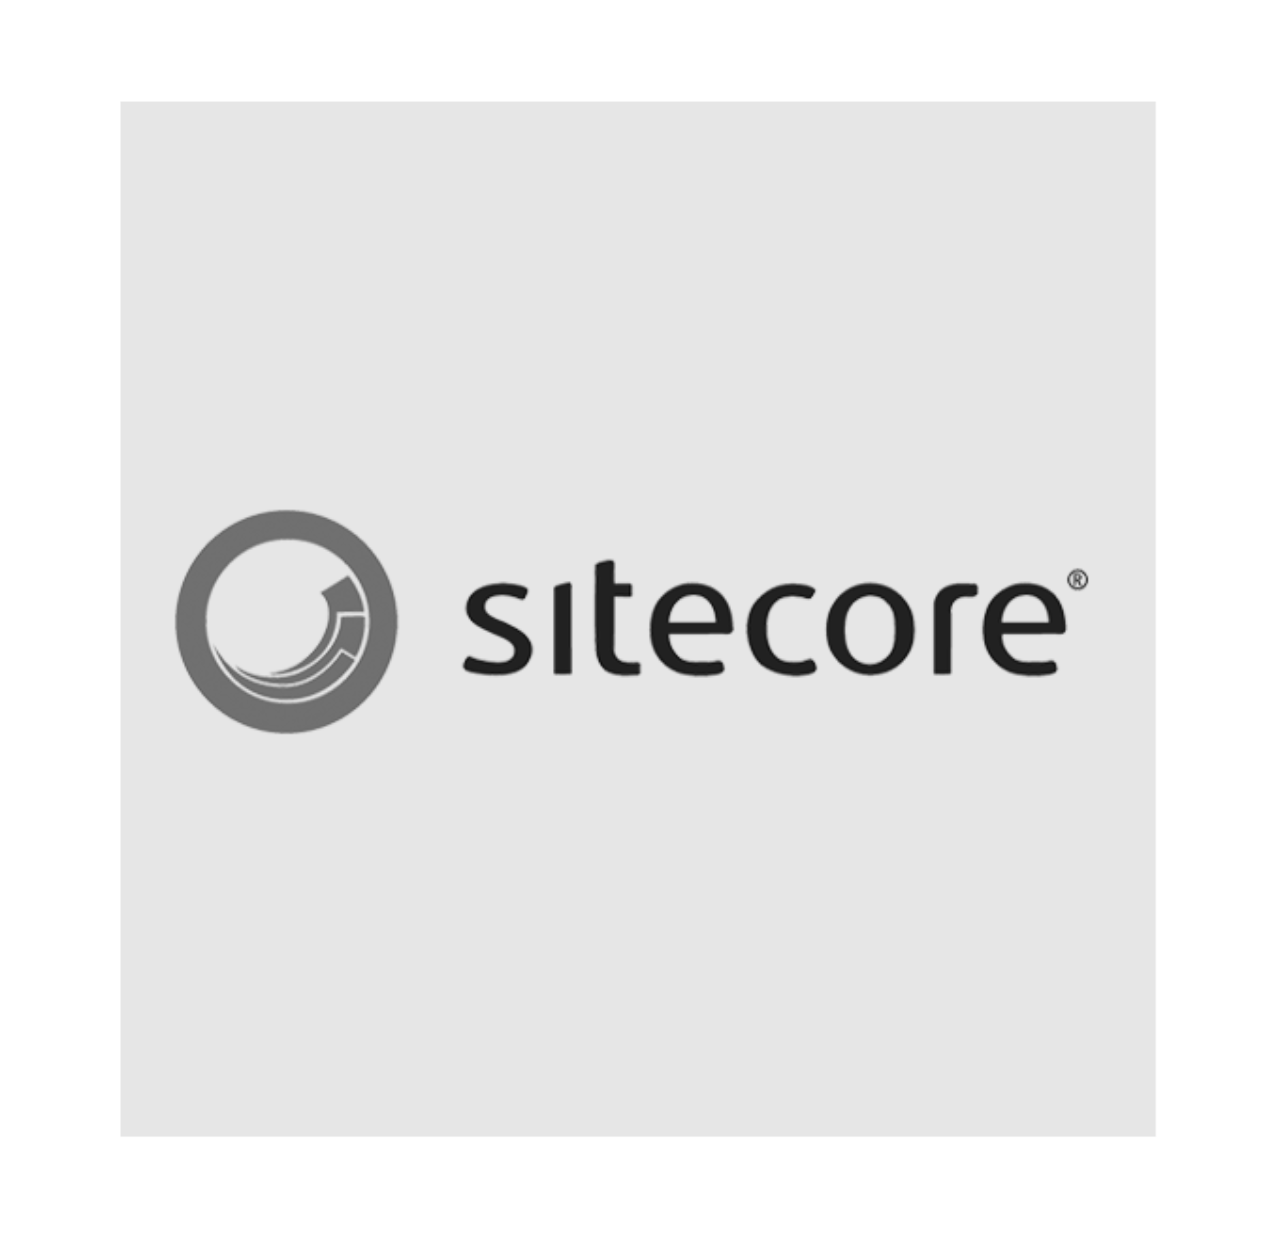 sitecore partner